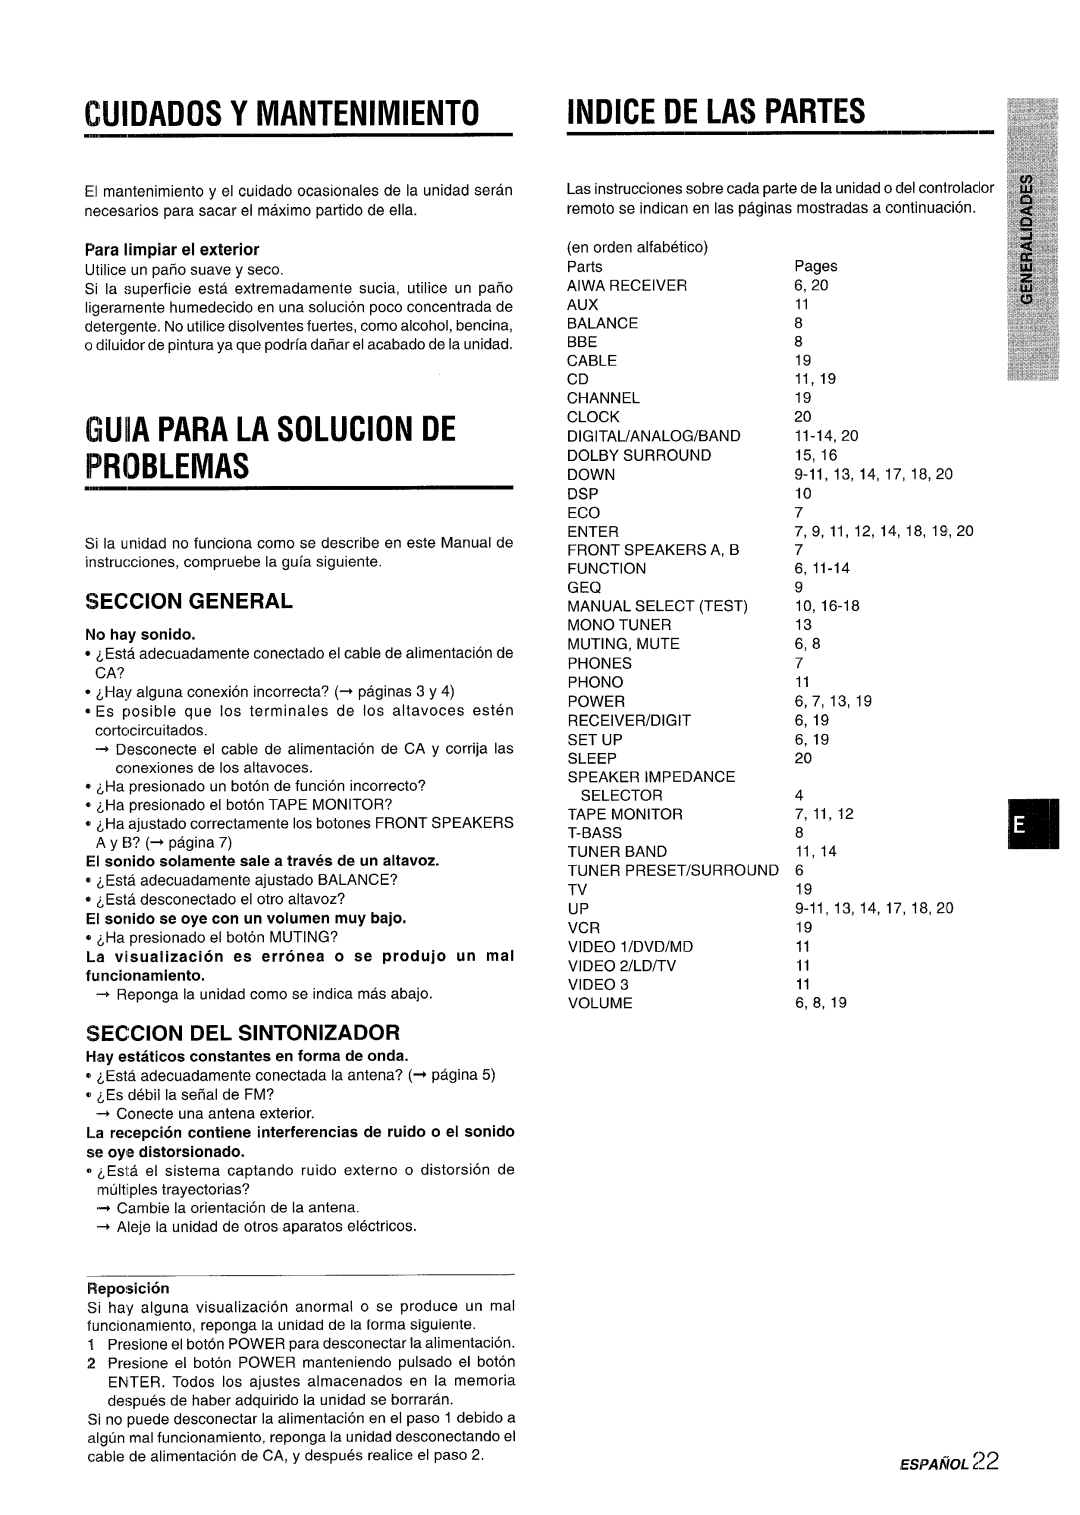 Sony AV-DV75 manual Cuidados Y Mantenimiento, Guiia Para La Solucion De Problemas, Indice De Las Partes, Seccion General 